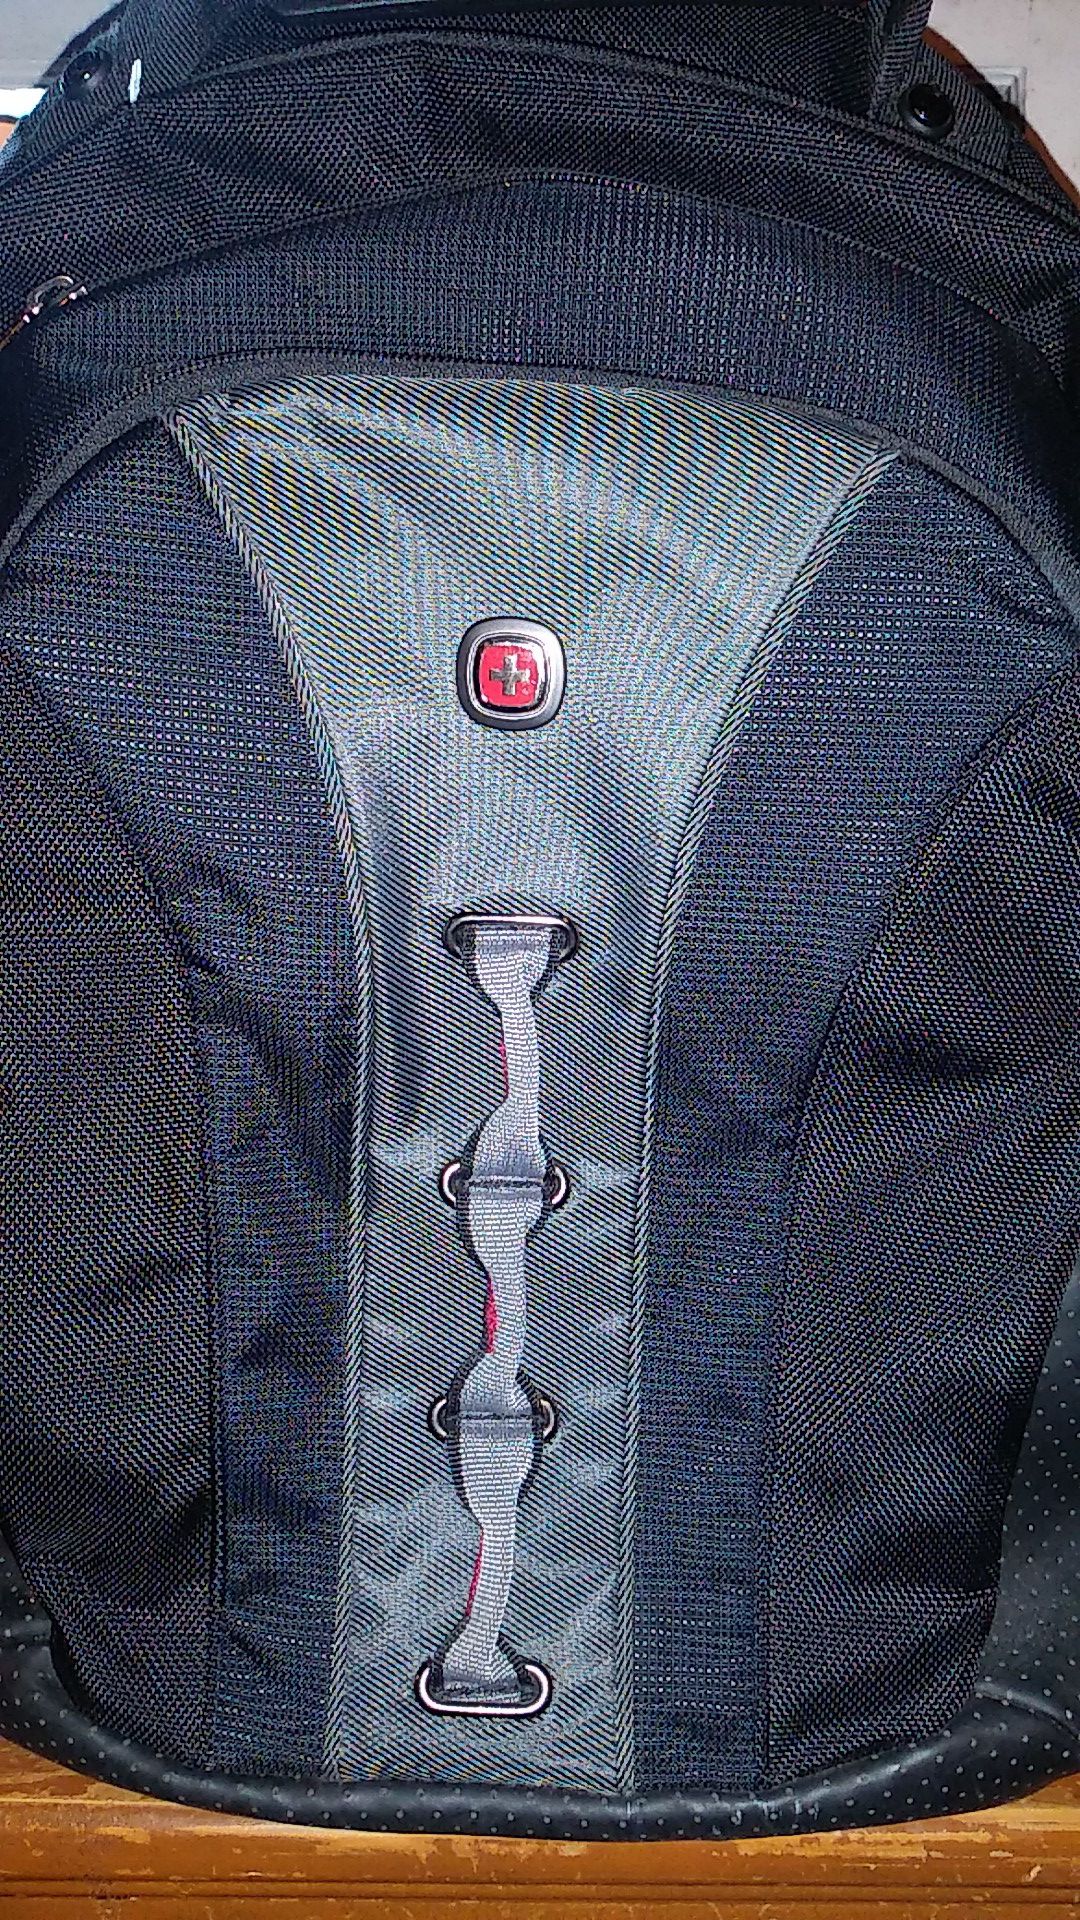 Swiss gear (backpack)